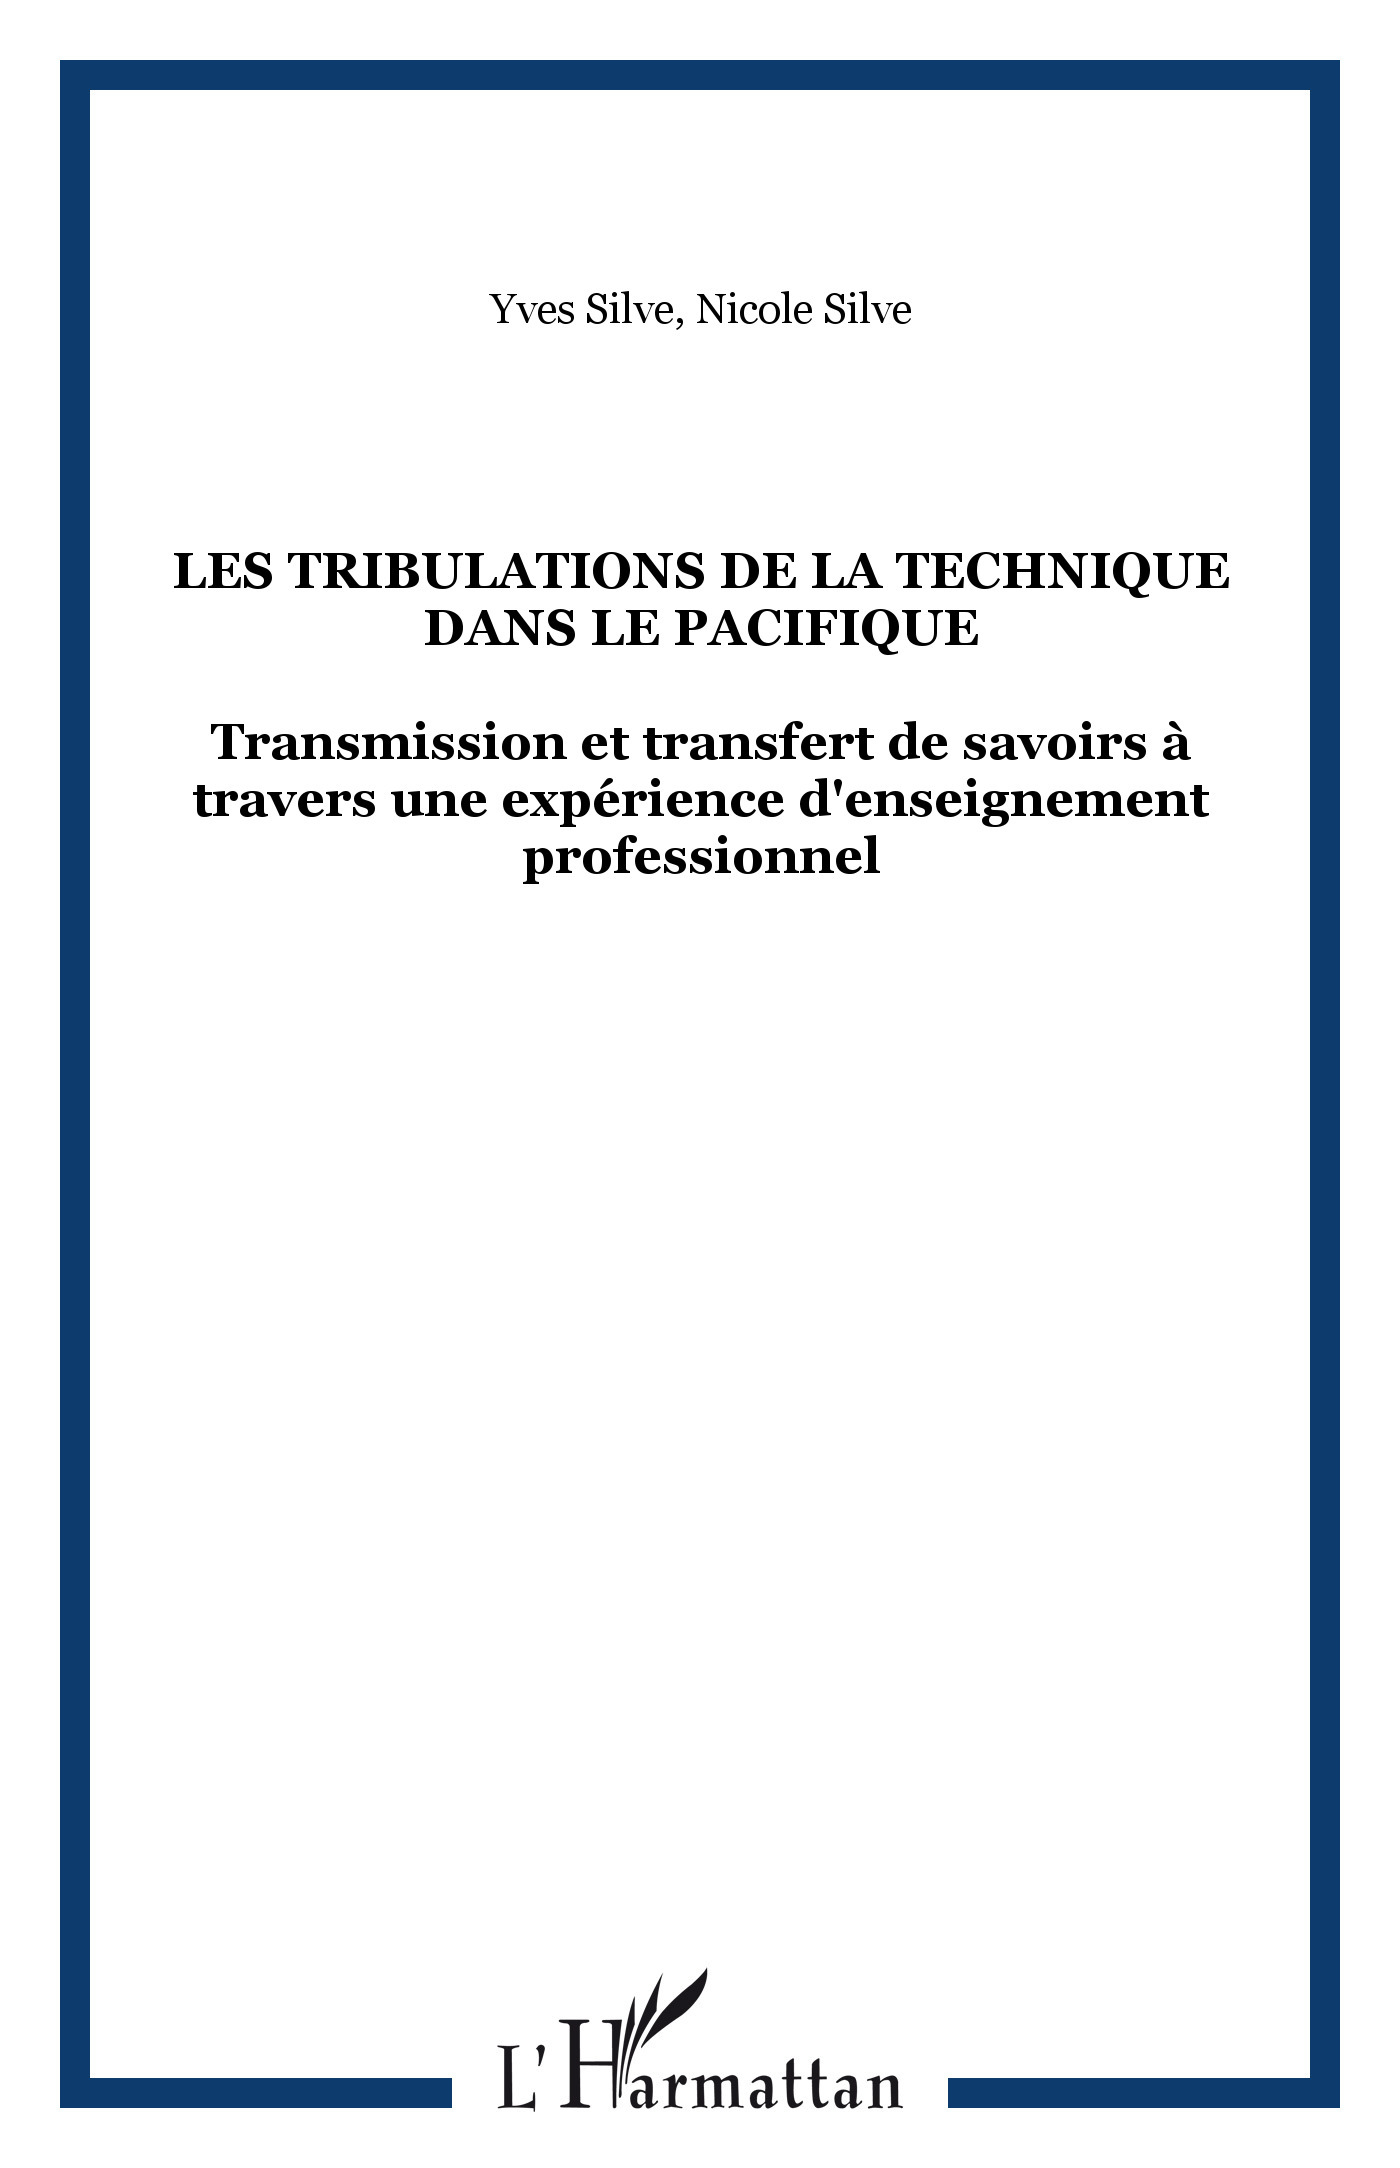 LES TRIBULATIONS DE LA TECHNIQUE DANS LE PACIFIQUE, Transmission et transfert de savoirs à travers une expérience d'enseignement (9782747512060-front-cover)